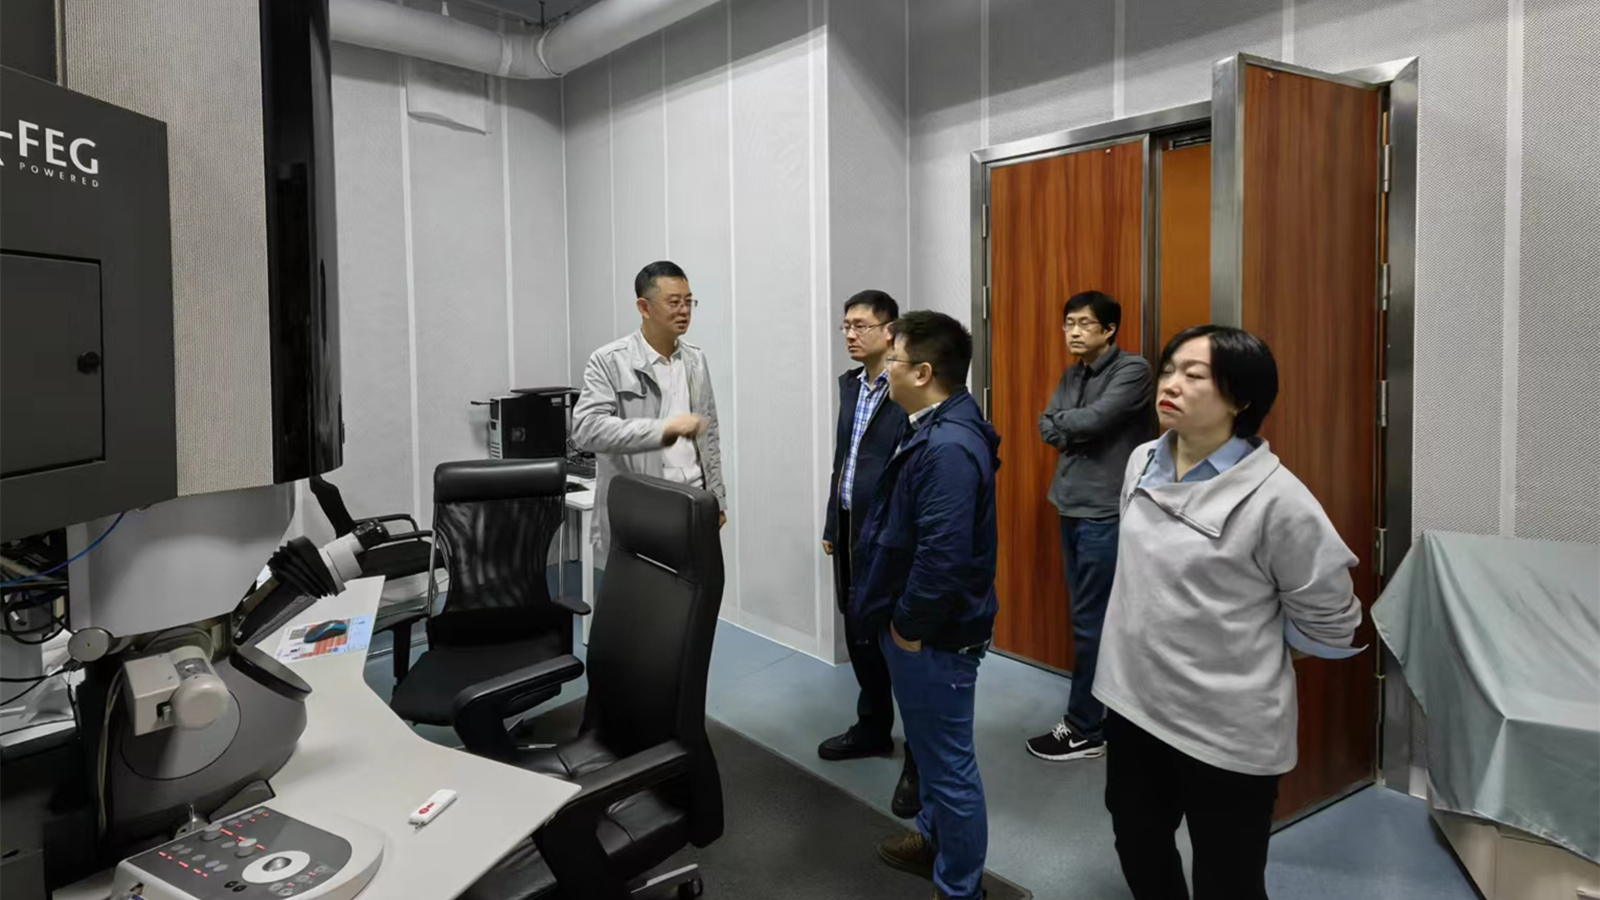 中国商飞上海飞机设计研究院一行到材料学院交流座谈